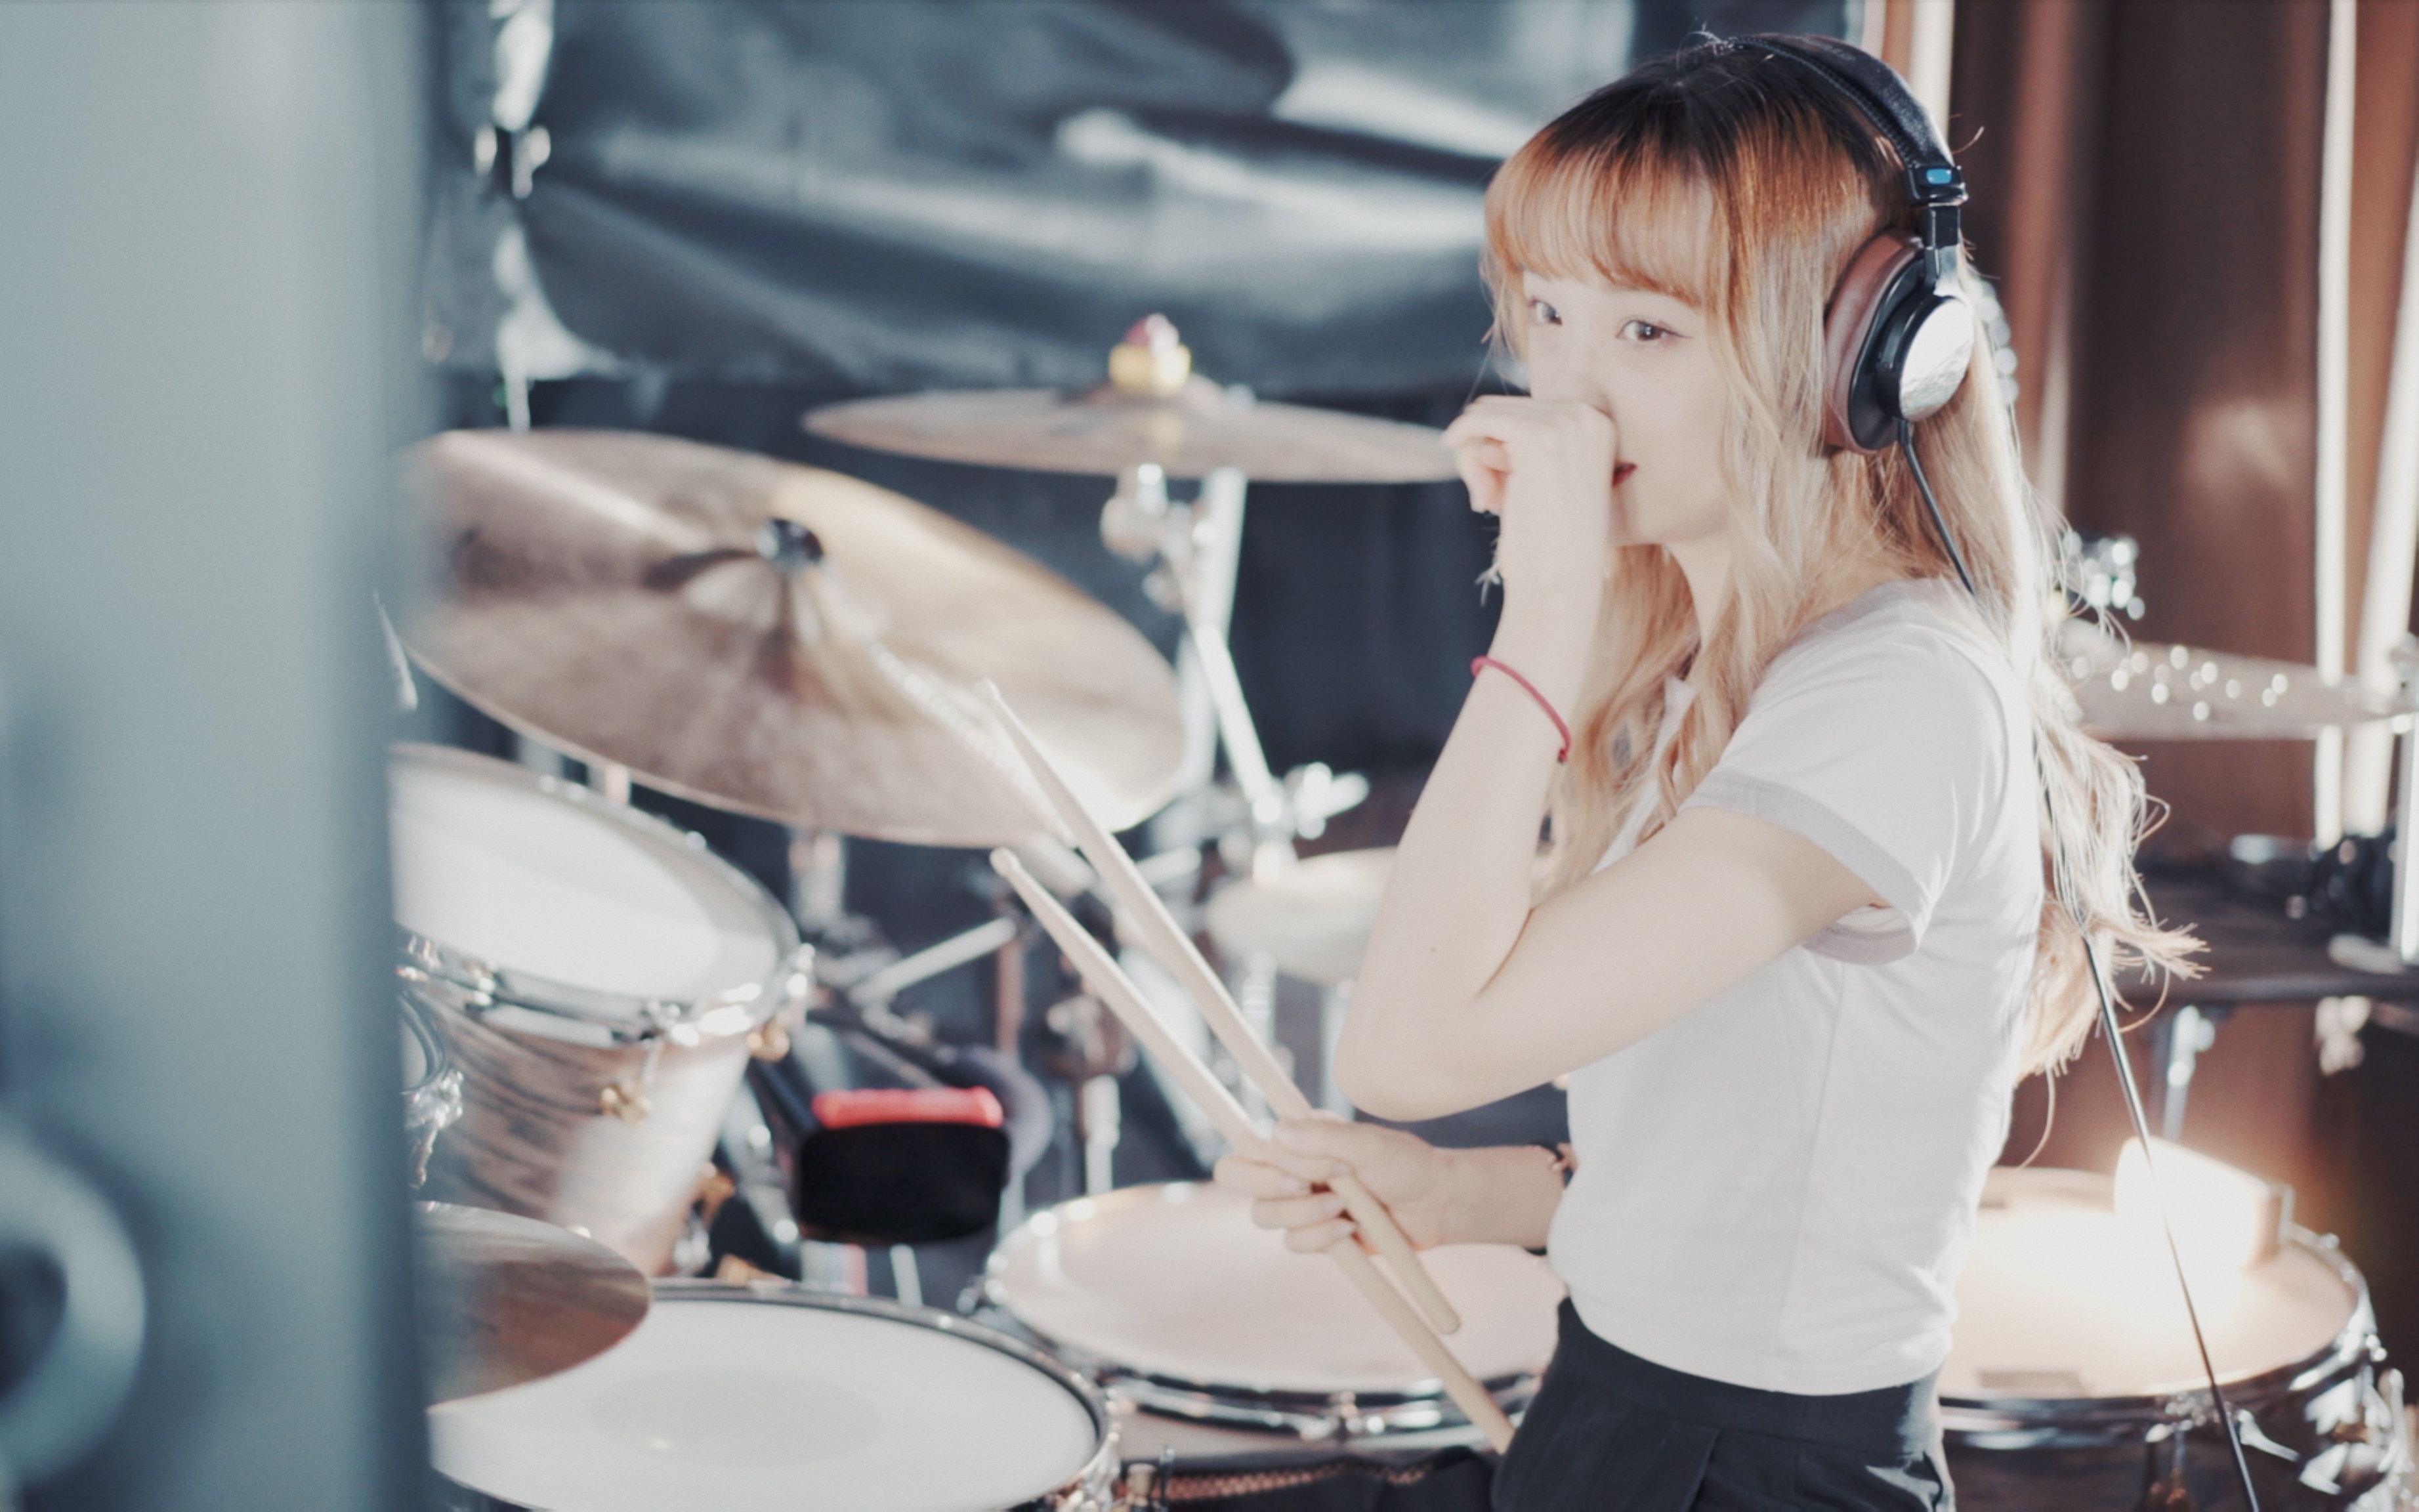 韩国女子乐队Bebop美女鼓手 雅妍 架子鼓街头表演街拍合辑-音乐视频-搜狐视频